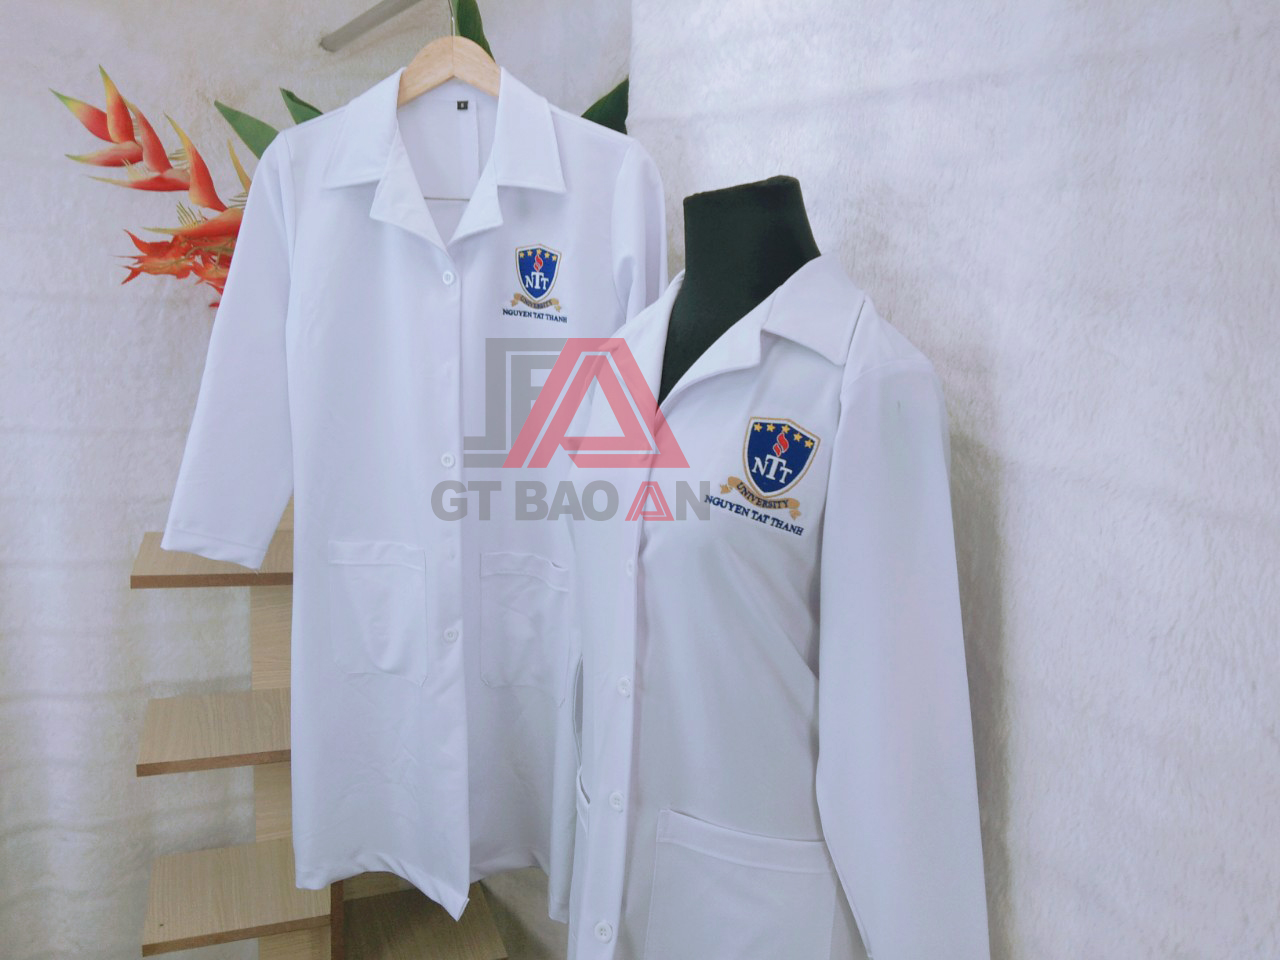 Áo blouse trắng trường Nguyễn Tất Thành